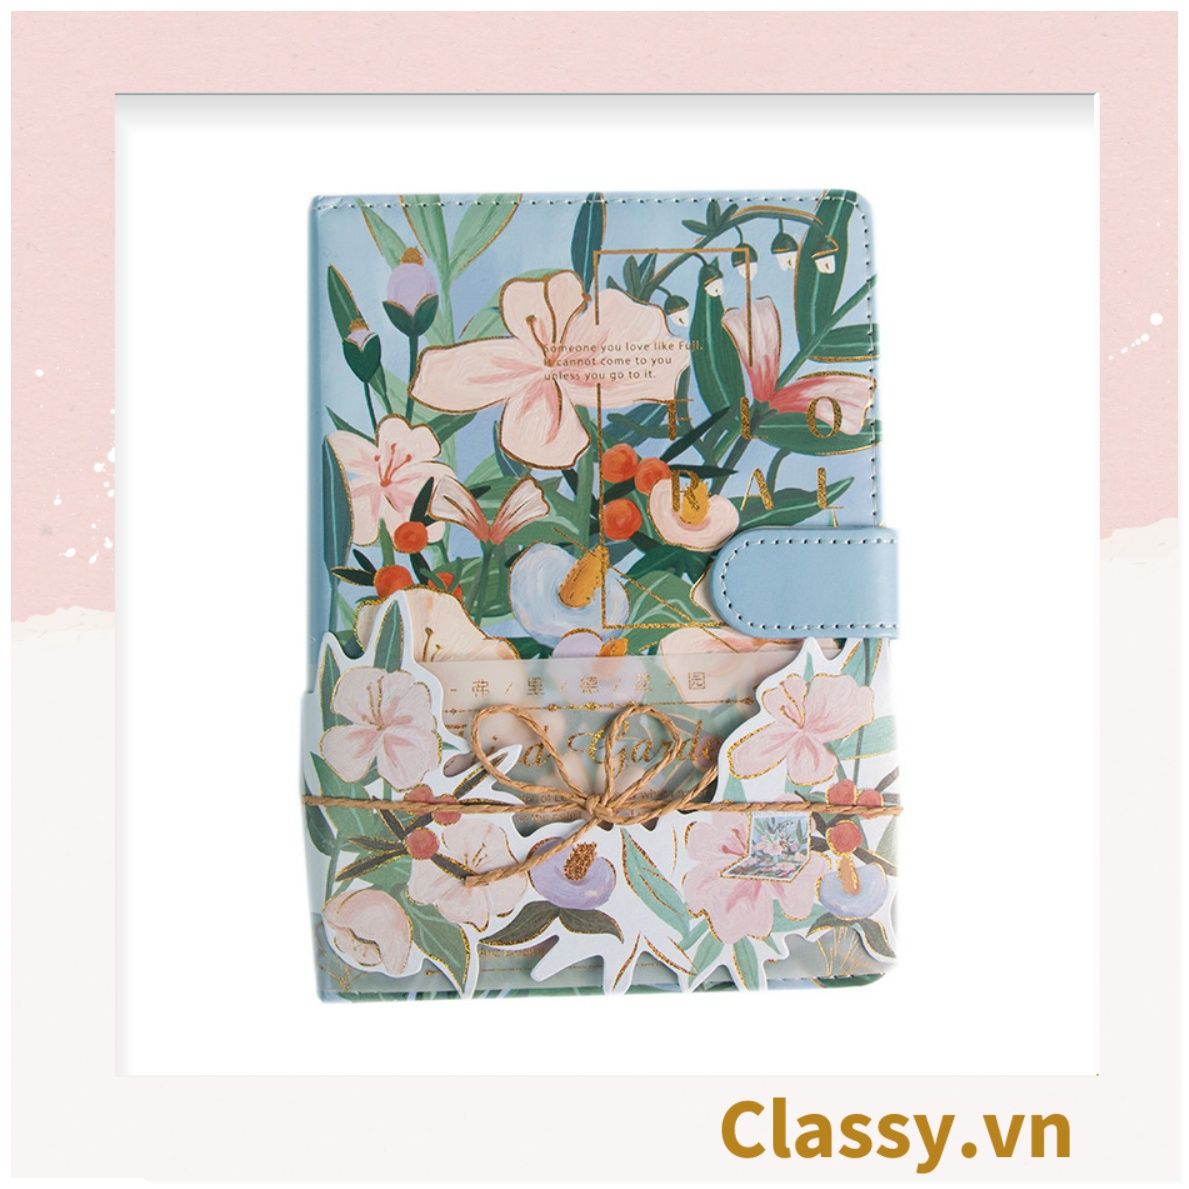  Sổ Bìa Cứng khóa từ sáng tạo Bằng Da In Hoạ Tiết Hoa Lá Dễ Thương Làm Nhật Ký, Quà Tặng PK1761 - Classy Floral Collection 